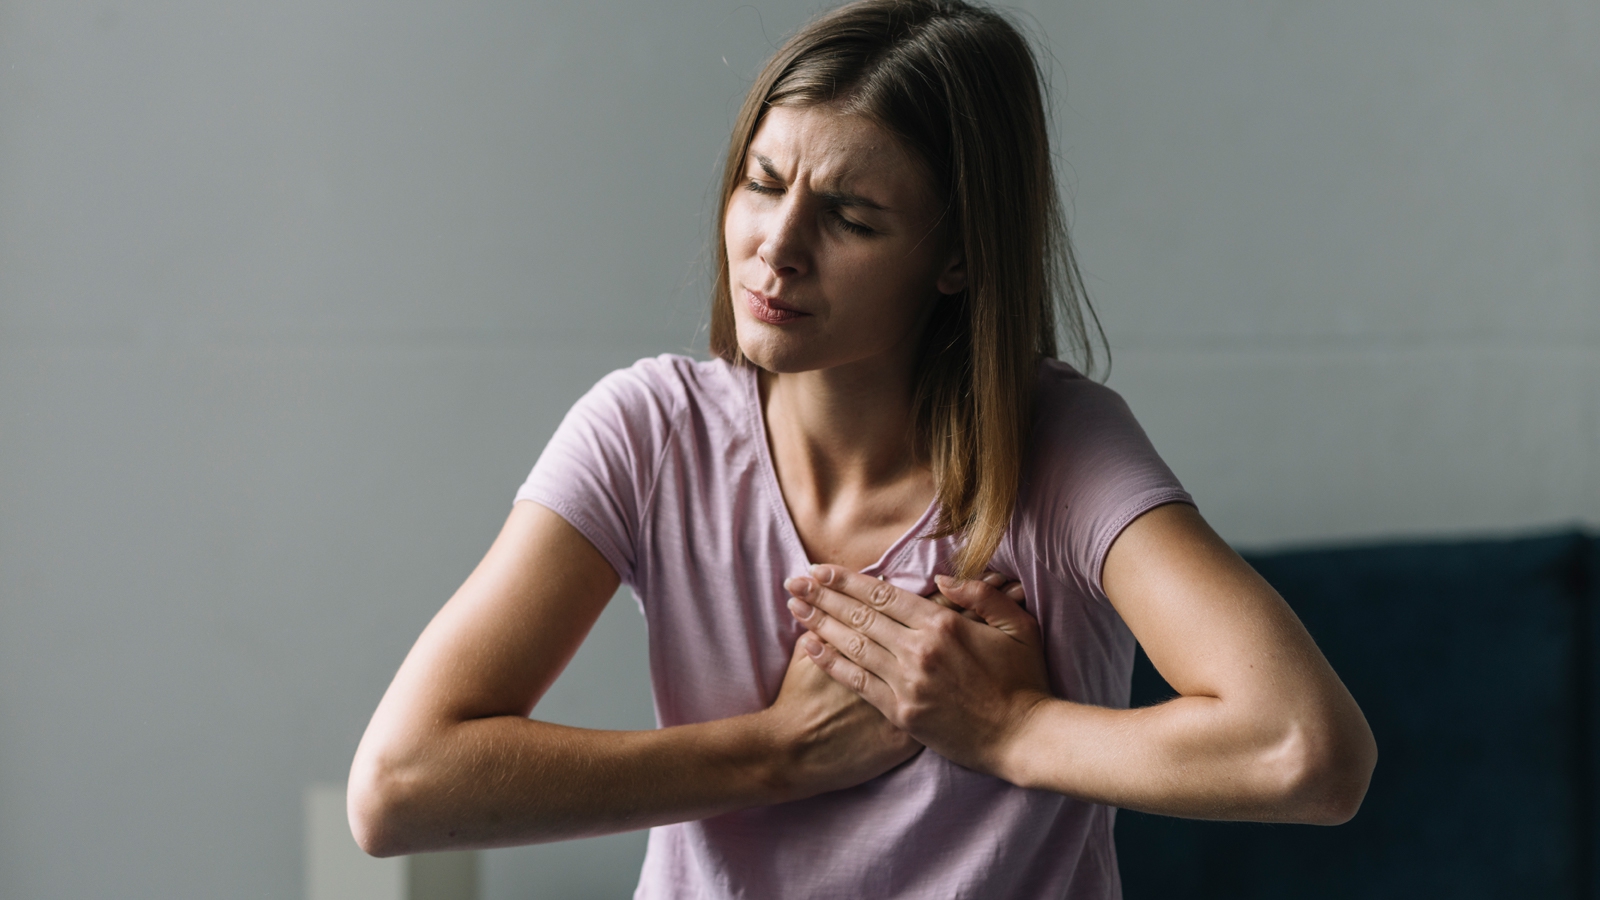 Có những bệnh lý nào khác có triệu chứng tương tự đau giữa ngực?
